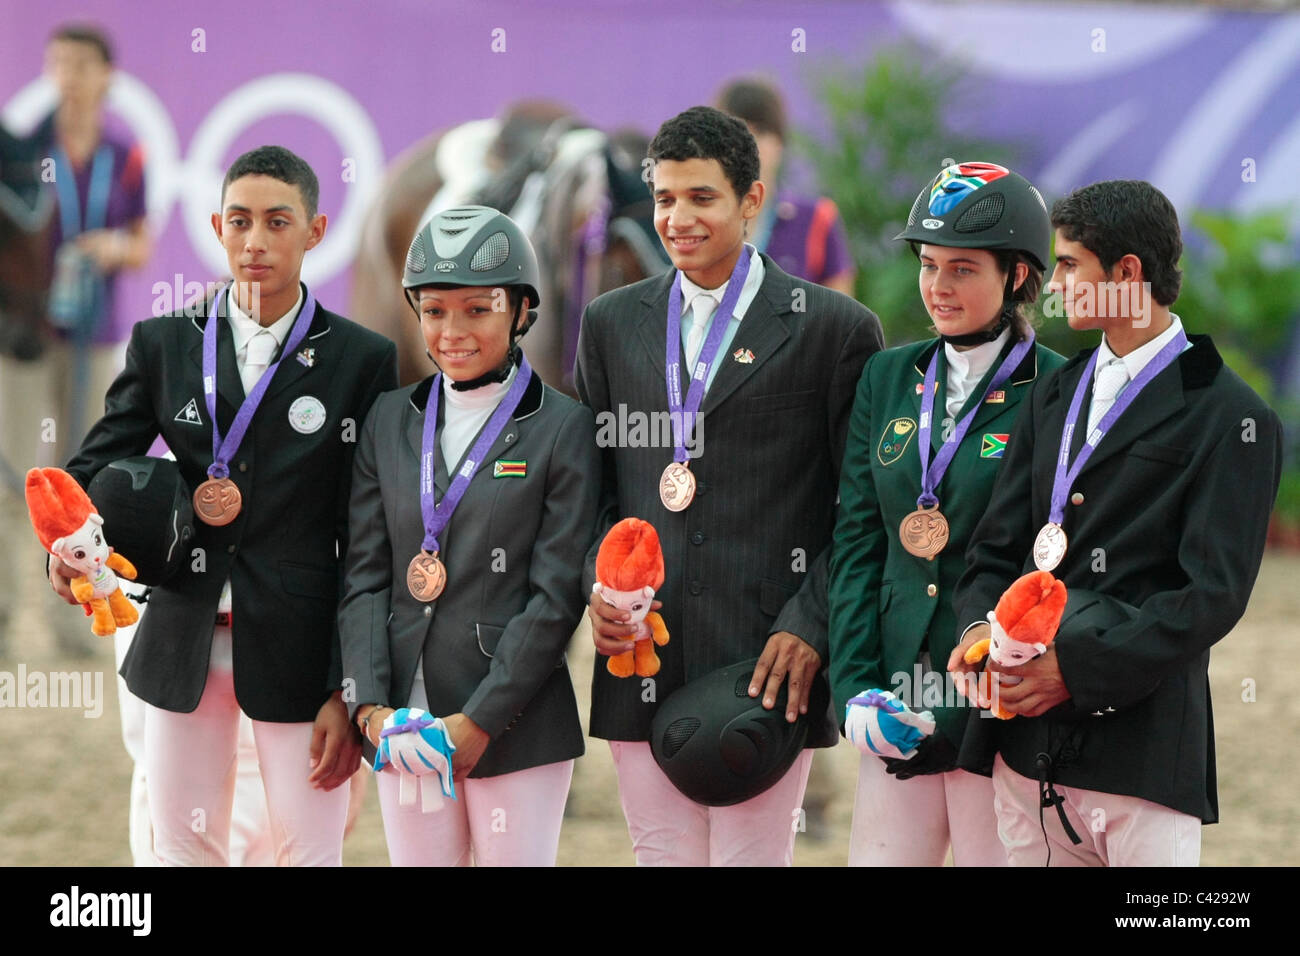 L'Afrique de l'équipe remporte la médaille de bronze dans l'Jeux olympiques de la jeunesse Singapour 2010 Équipe équestre de saut. Banque D'Images